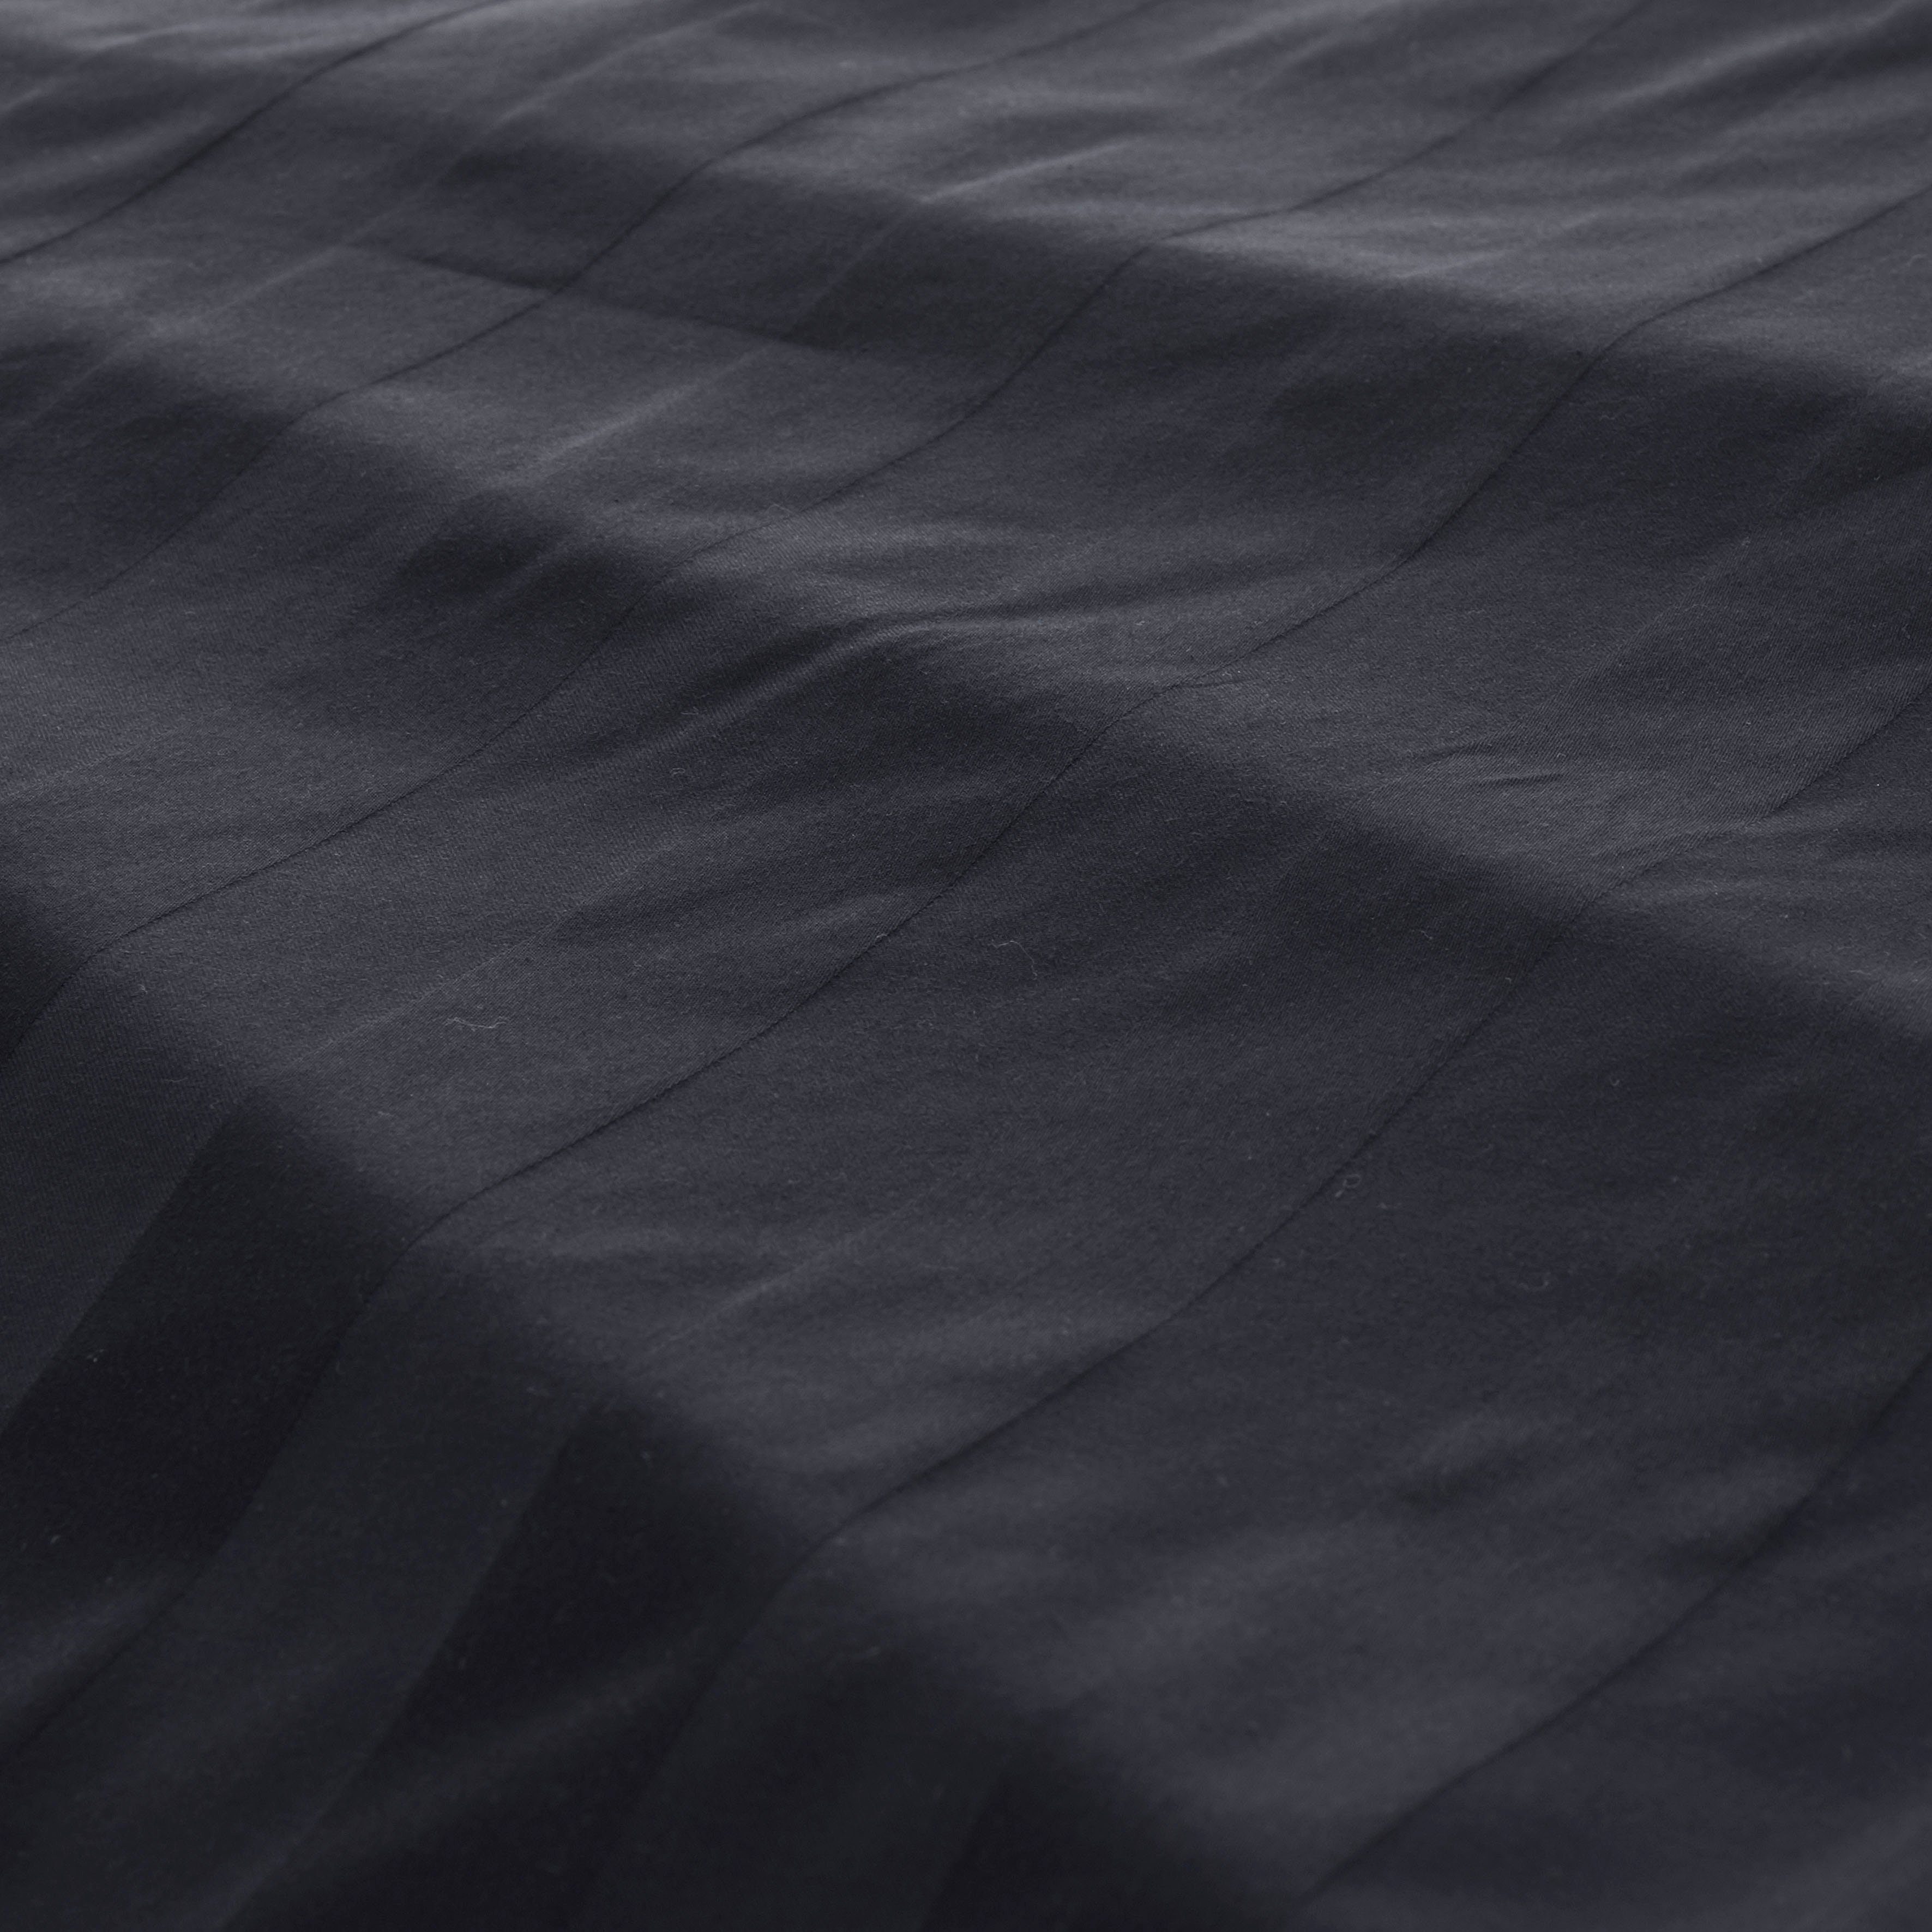 Bettwäsche Malia in Gr. Satin-Qualität Baumwolle, 135x200 Bettwäsche cm, schwarz 155x220 zeitlose Bettwäsche 2 teilig, Satin, aus in oder Leonique